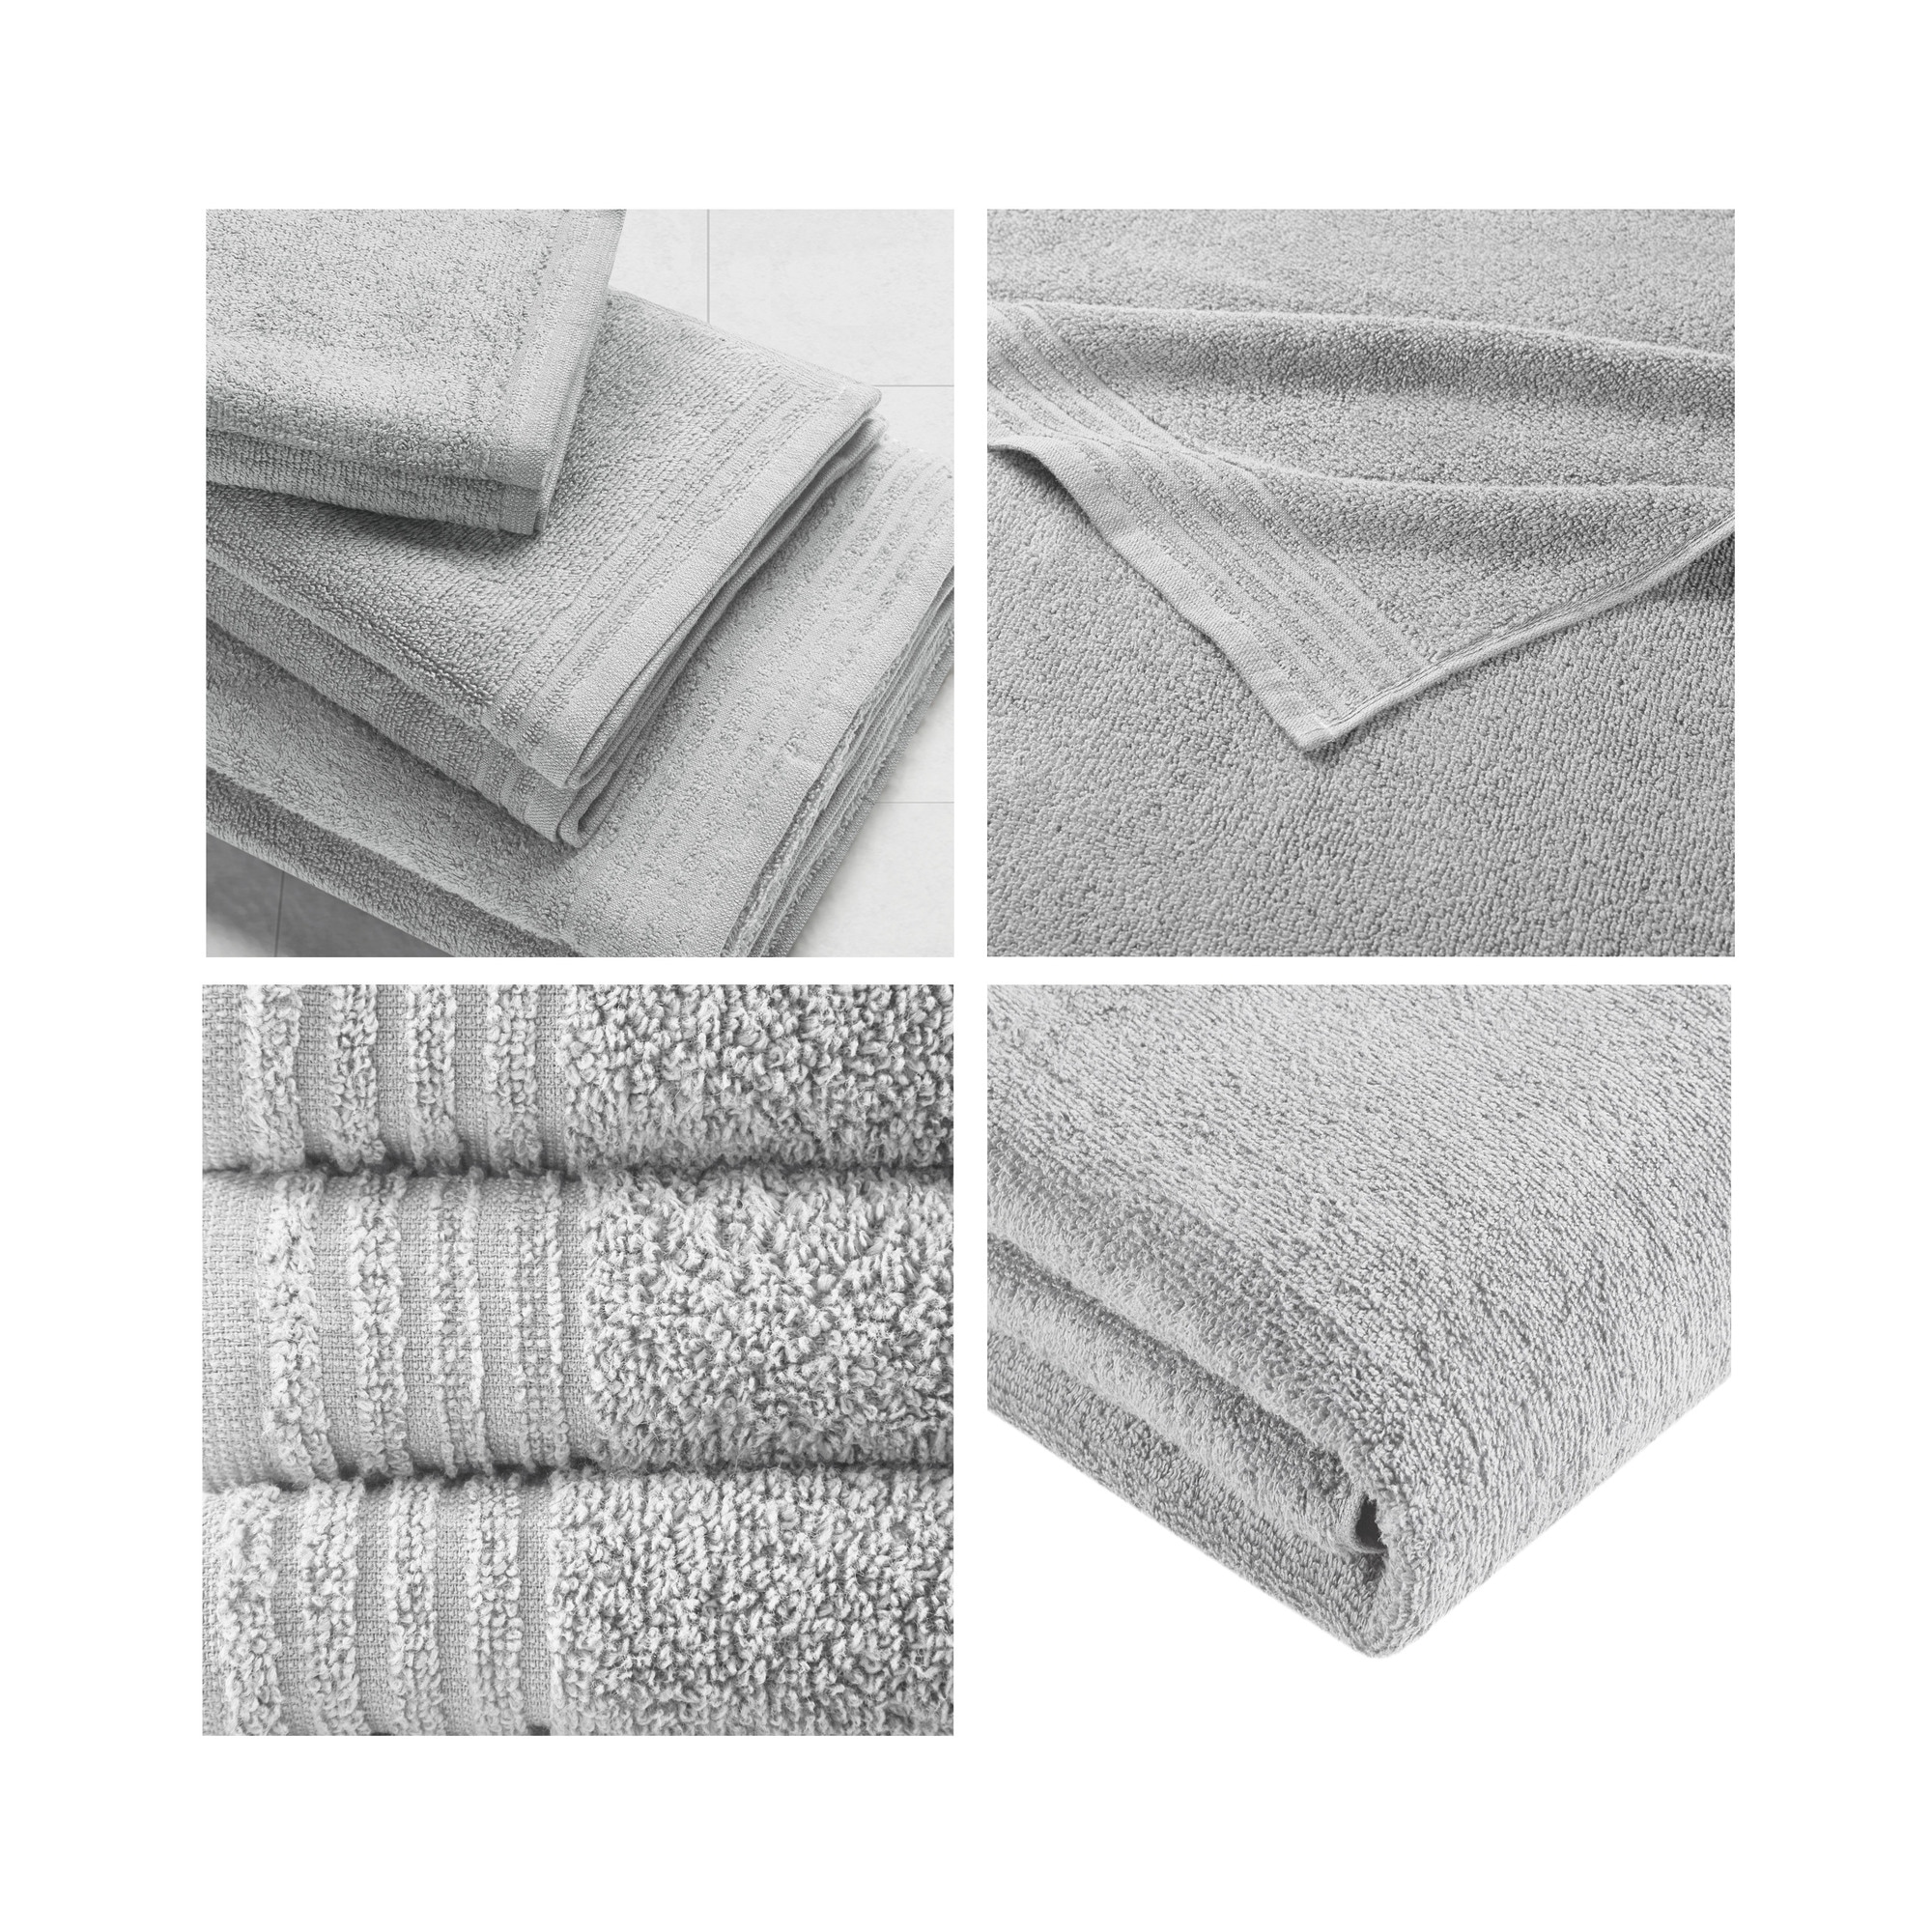 https://ak1.ostkcdn.com/images/products/is/images/direct/2ab201ed0b28a5eaf5d5524a34b0adcc9d804441/510-Design-Big-Bundle-100%25-Cotton-Quick-Dry-12-Piece-Bath-Towel-Set.jpg